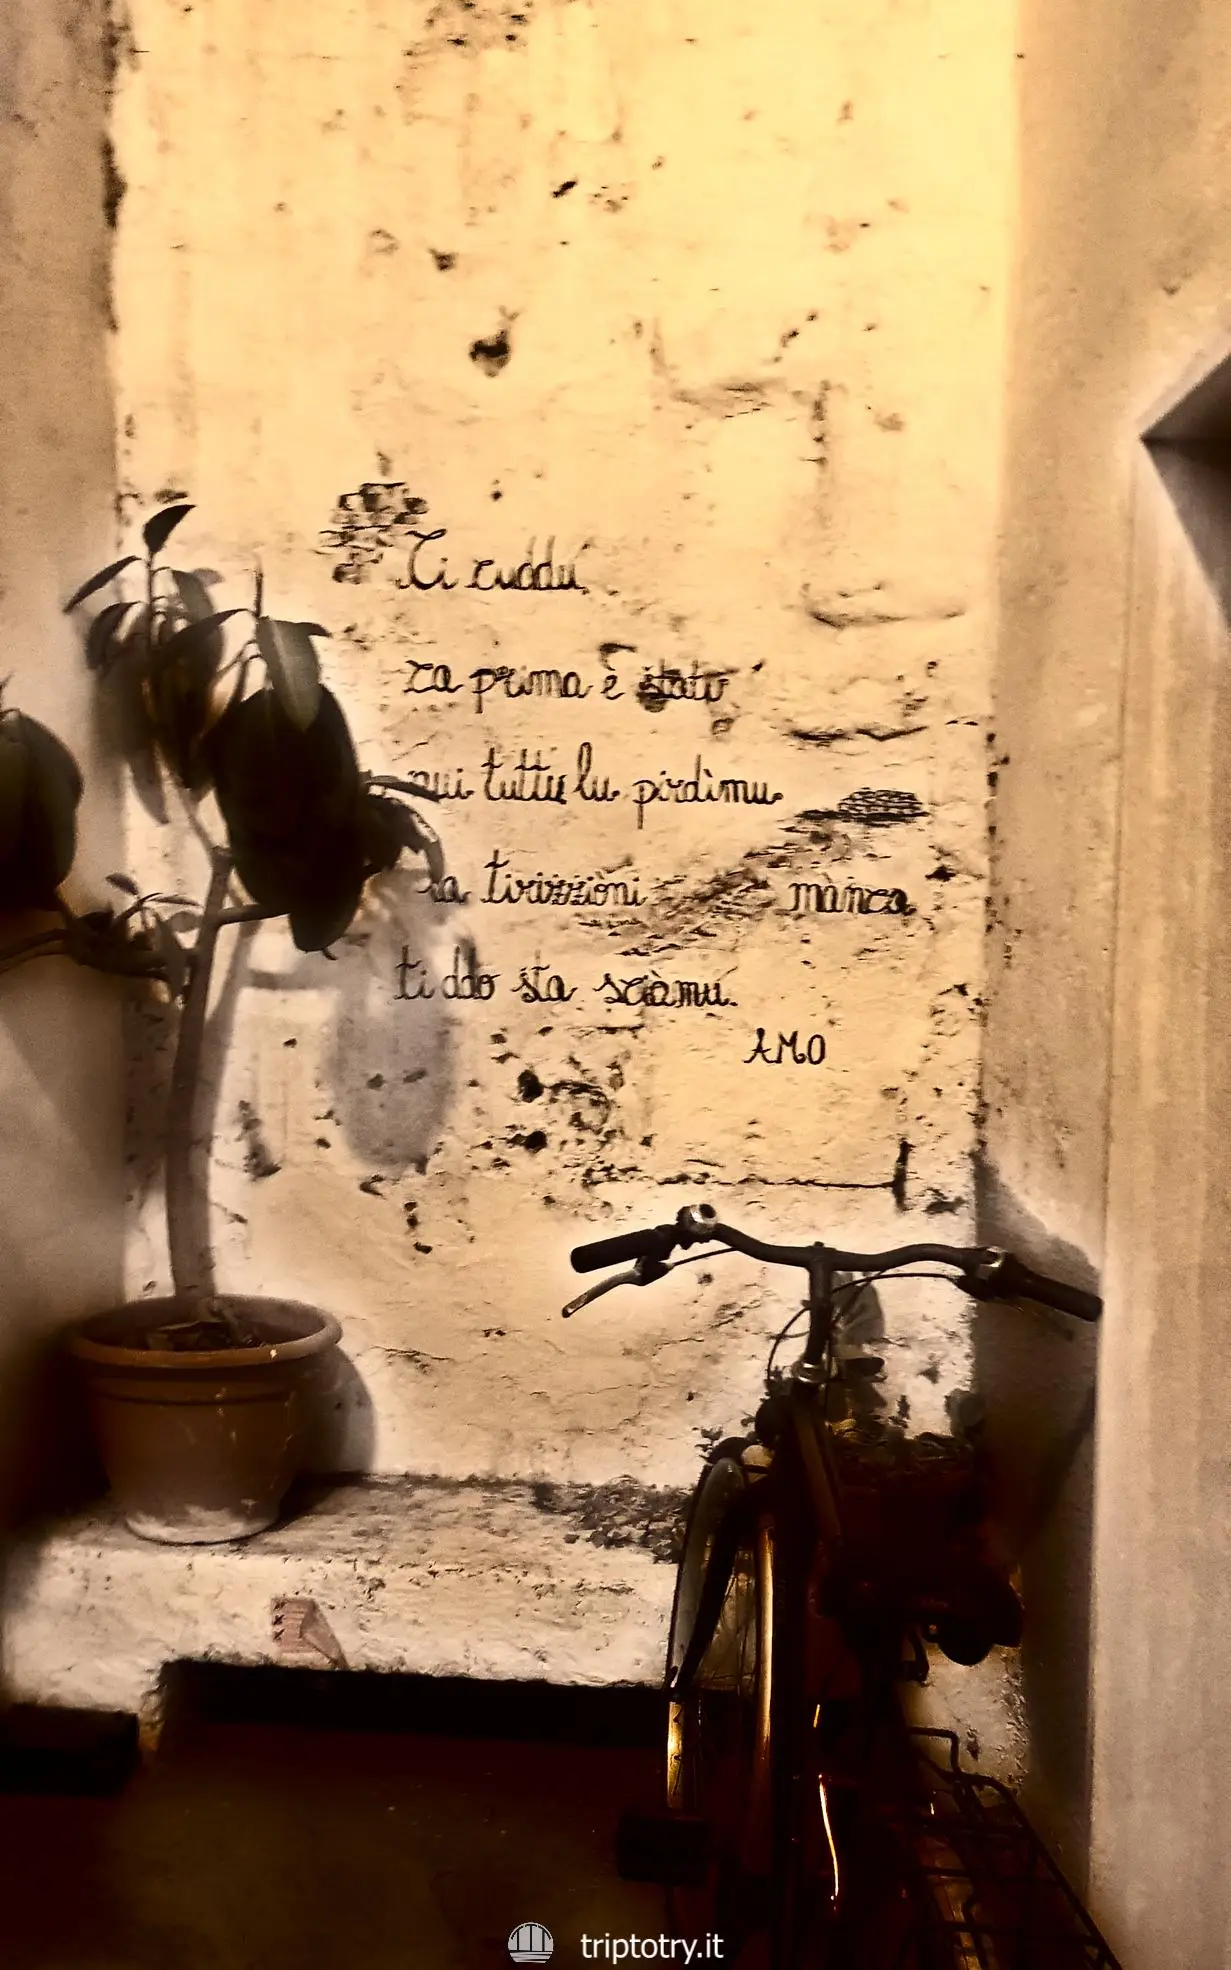 ITINERARIO PER VISITARE IL SALENTO FAI DA TE - Poesie scritte sui muri dei vicoli storici del paese di Maruggio in Salento - GUIDE SALENTO